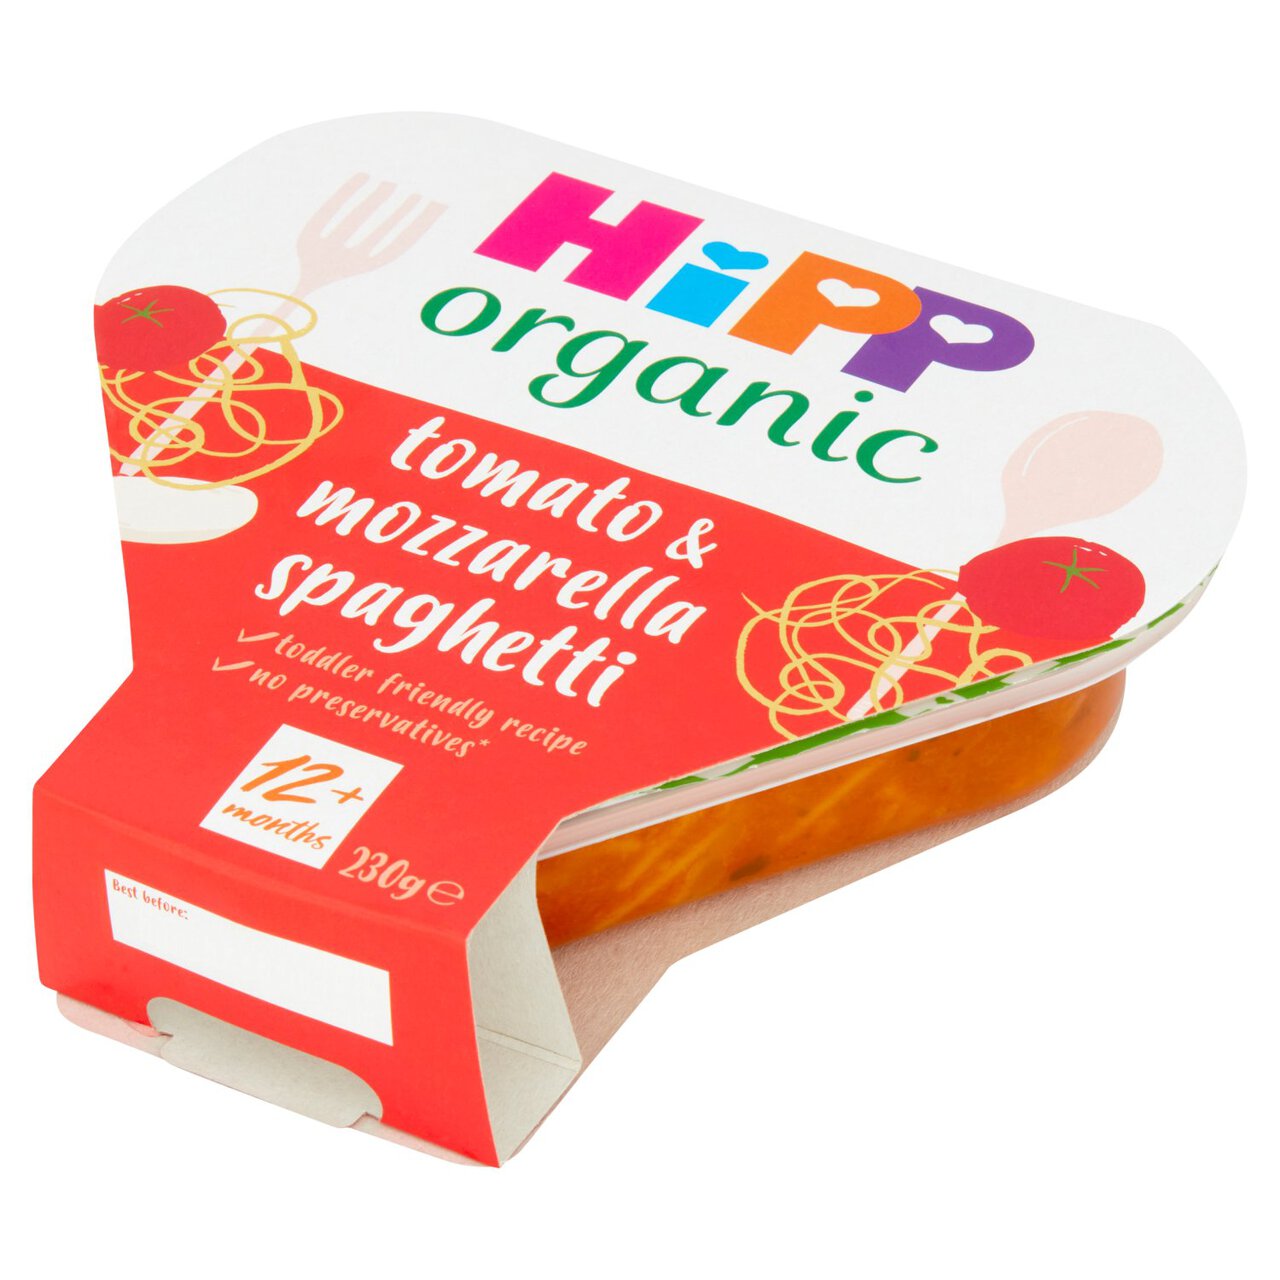 HiPP Organic Tomato & Mozzarella Spaghetti Toddler Tray Meal 1-3 Years 230g